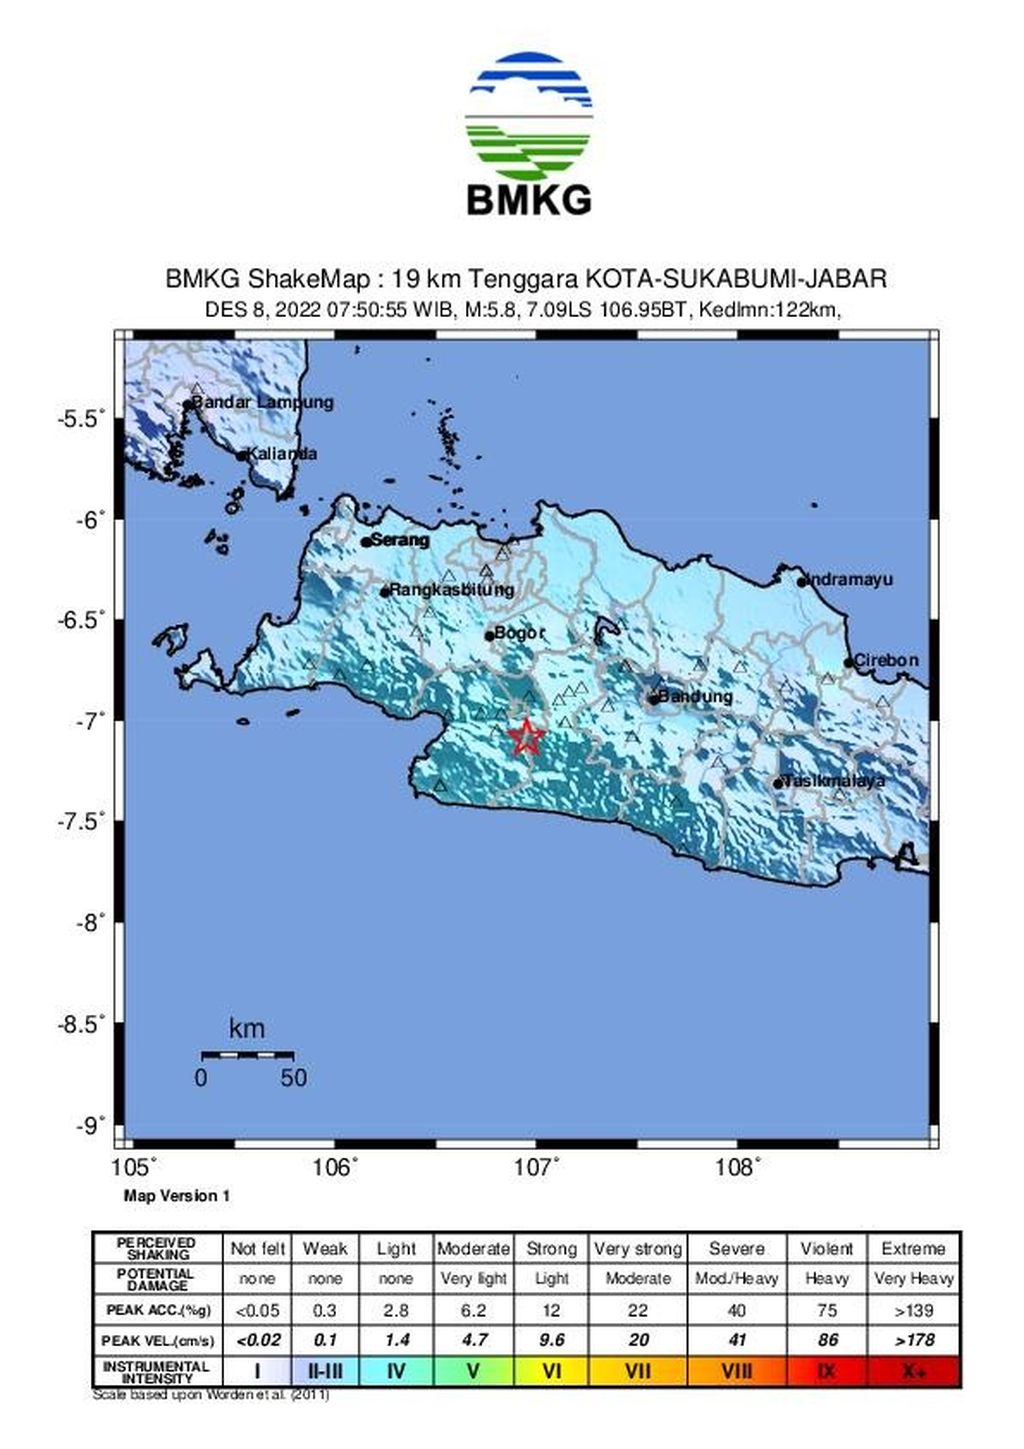 Gempa bumi berkekuatan M 5,8 mengguncang wilayah Sukabumi, Jawa Barat, dan sekitarnya pada Kamis (8/12/2022) pukul 07.50 